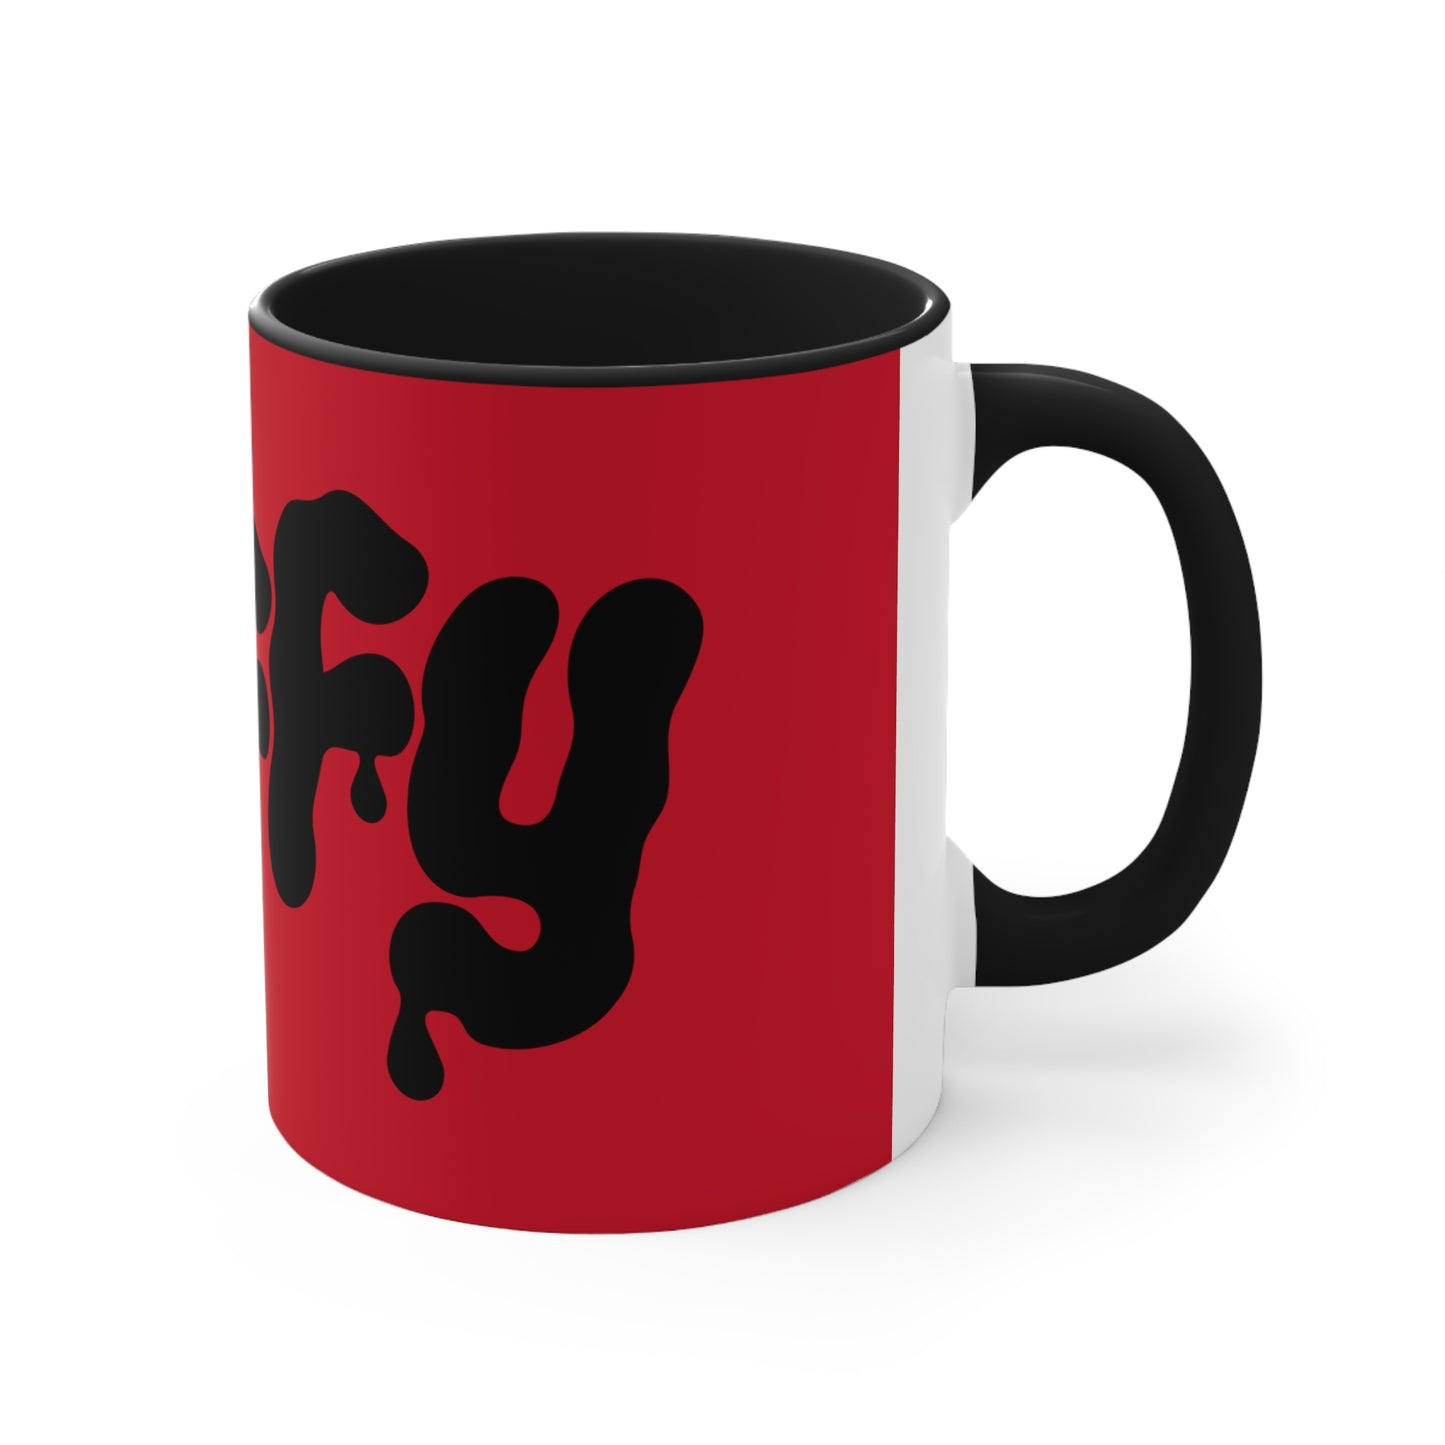 PUFFY Accent Coffee Mug, 11oz